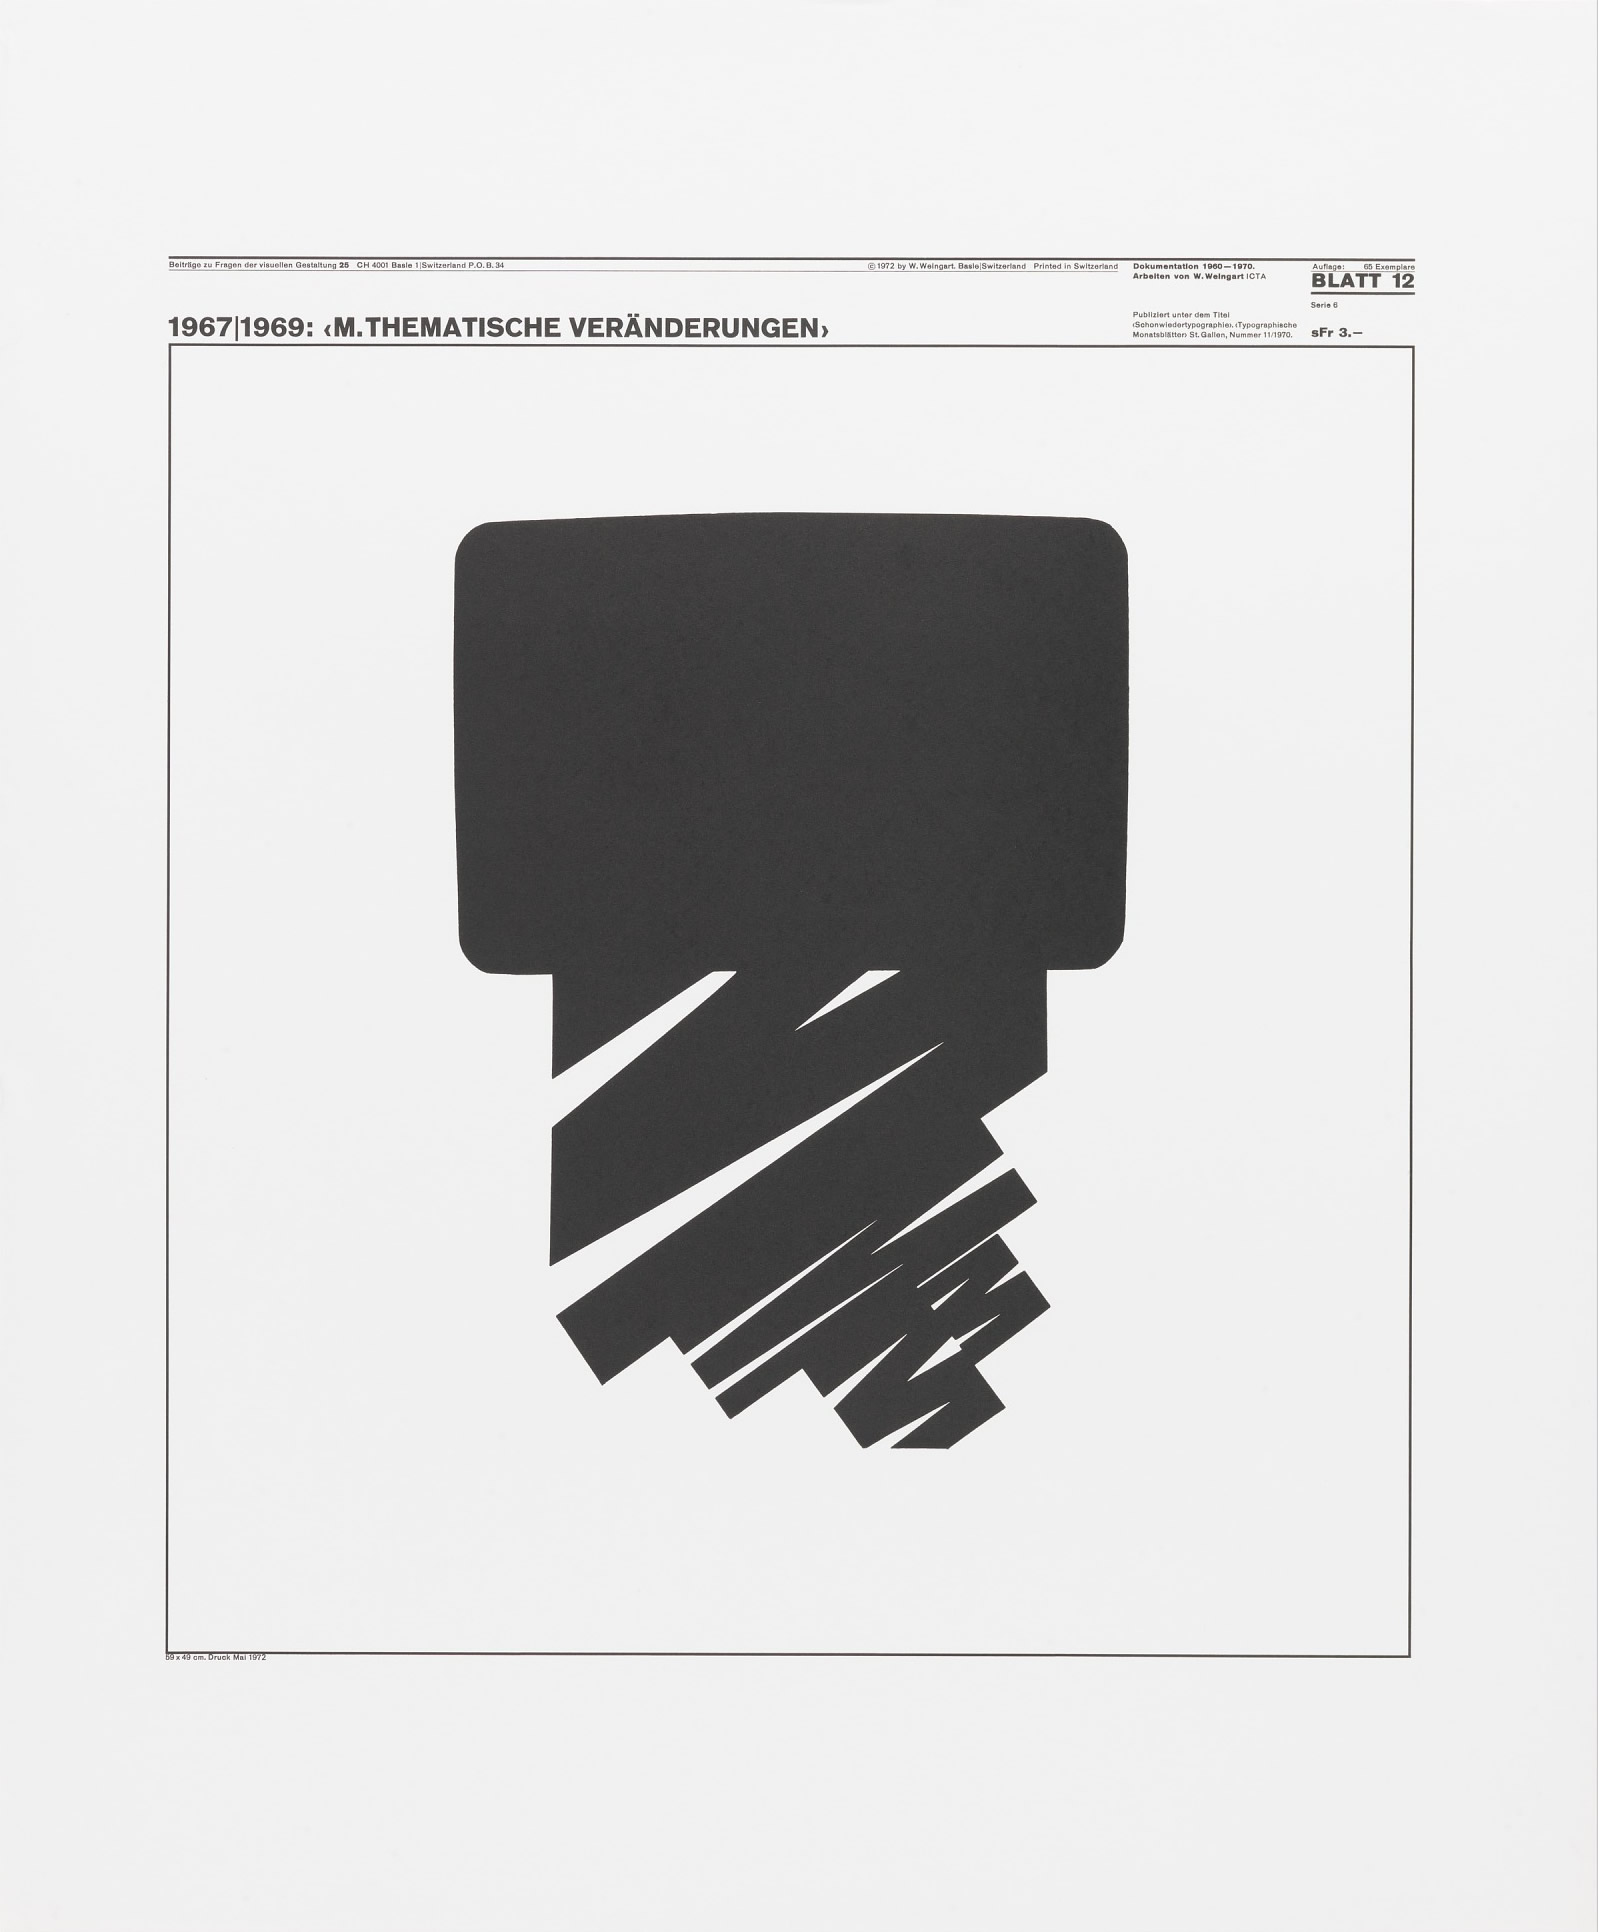 Wolfgang Weingart: Beiträge zu Fragen der visuellen Gestaltung 25, Blatt 12 from the portfolio Dokumentation 1960—1970, Arbeiten von W. Weingart, Designed 1967-69. Lithograph. (58.9 x 49 cm)